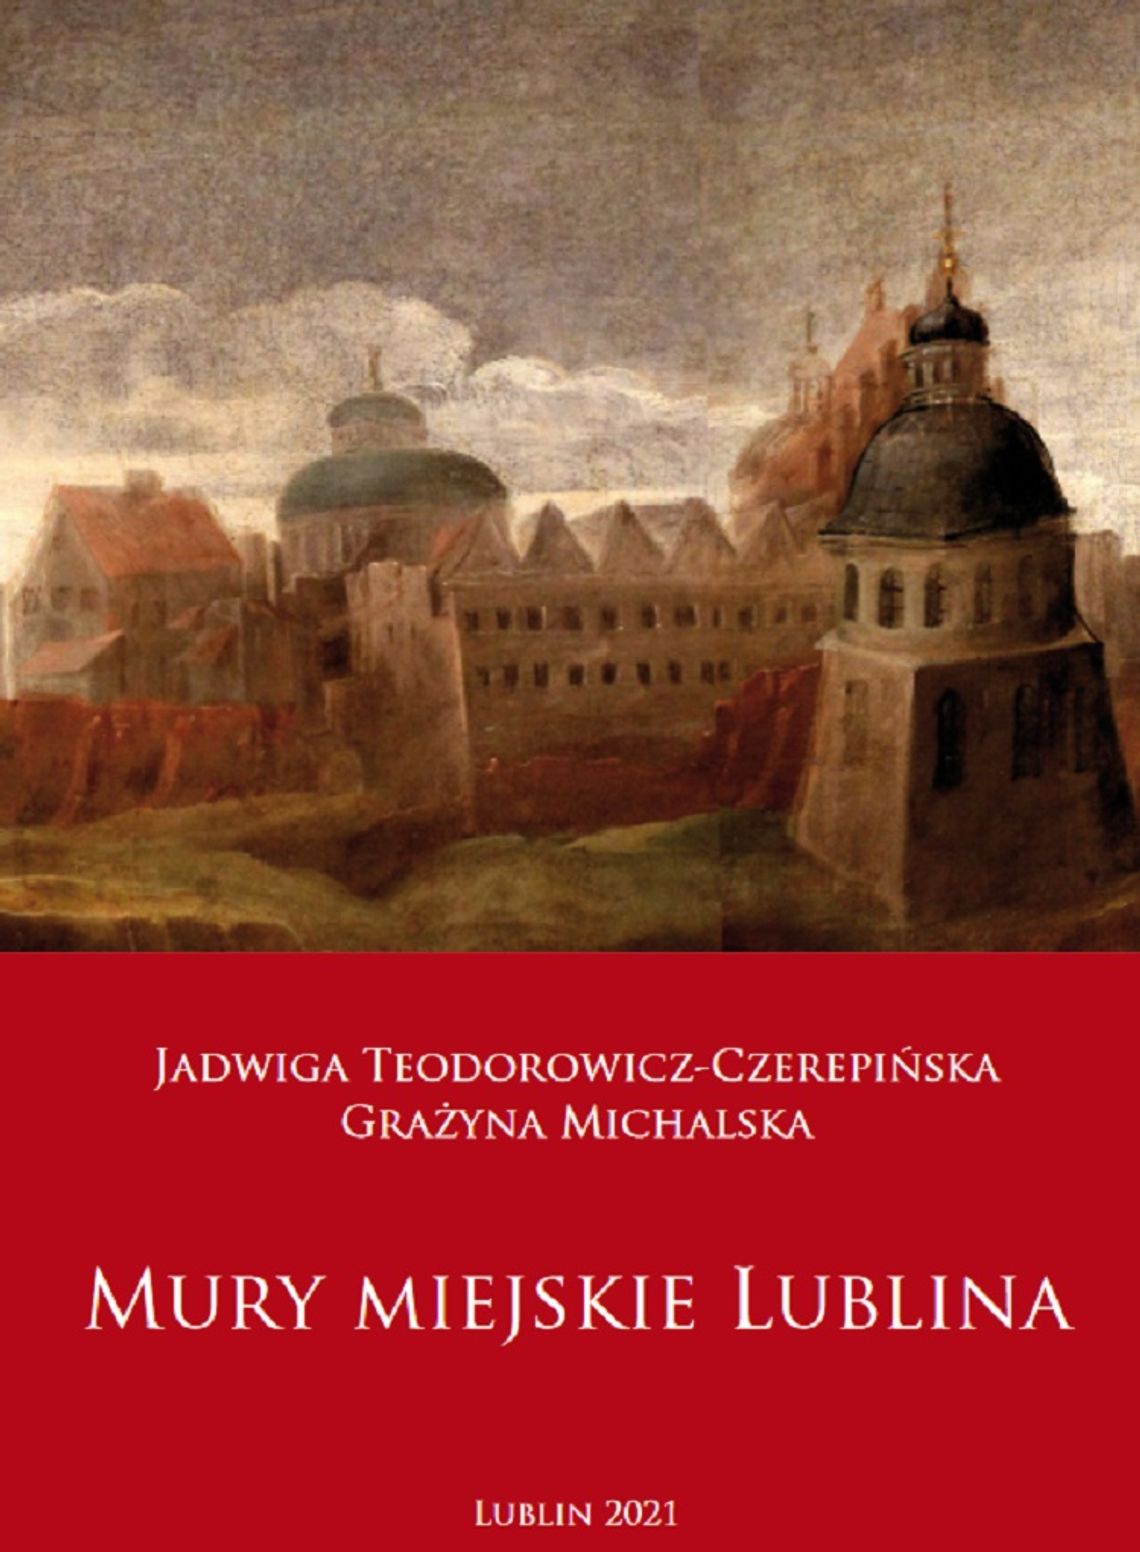 Książka o historii lubelskich bram, wież, baszt i furt